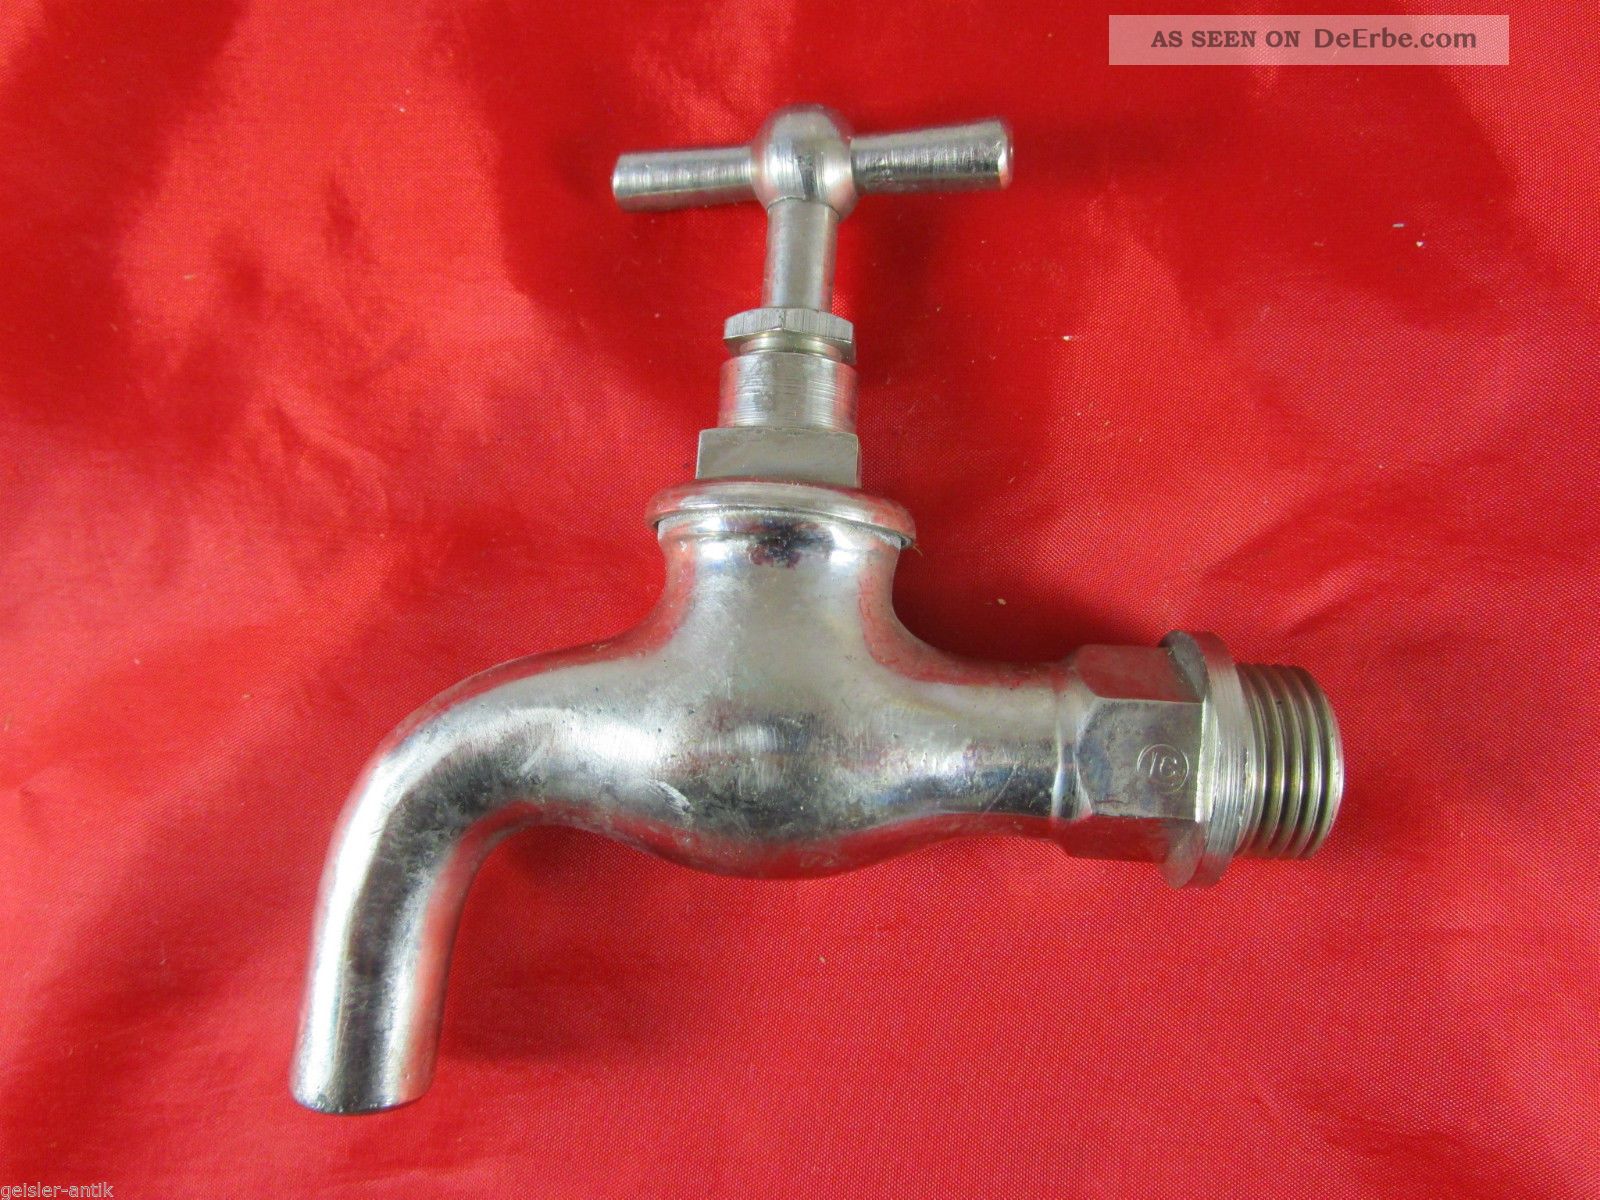 Uralt Wie Wasserhahn Absperrhahn Messing Bad Sanitär Vintage Um 1930/40 1 Original, vor 1960 gefertigt Bild